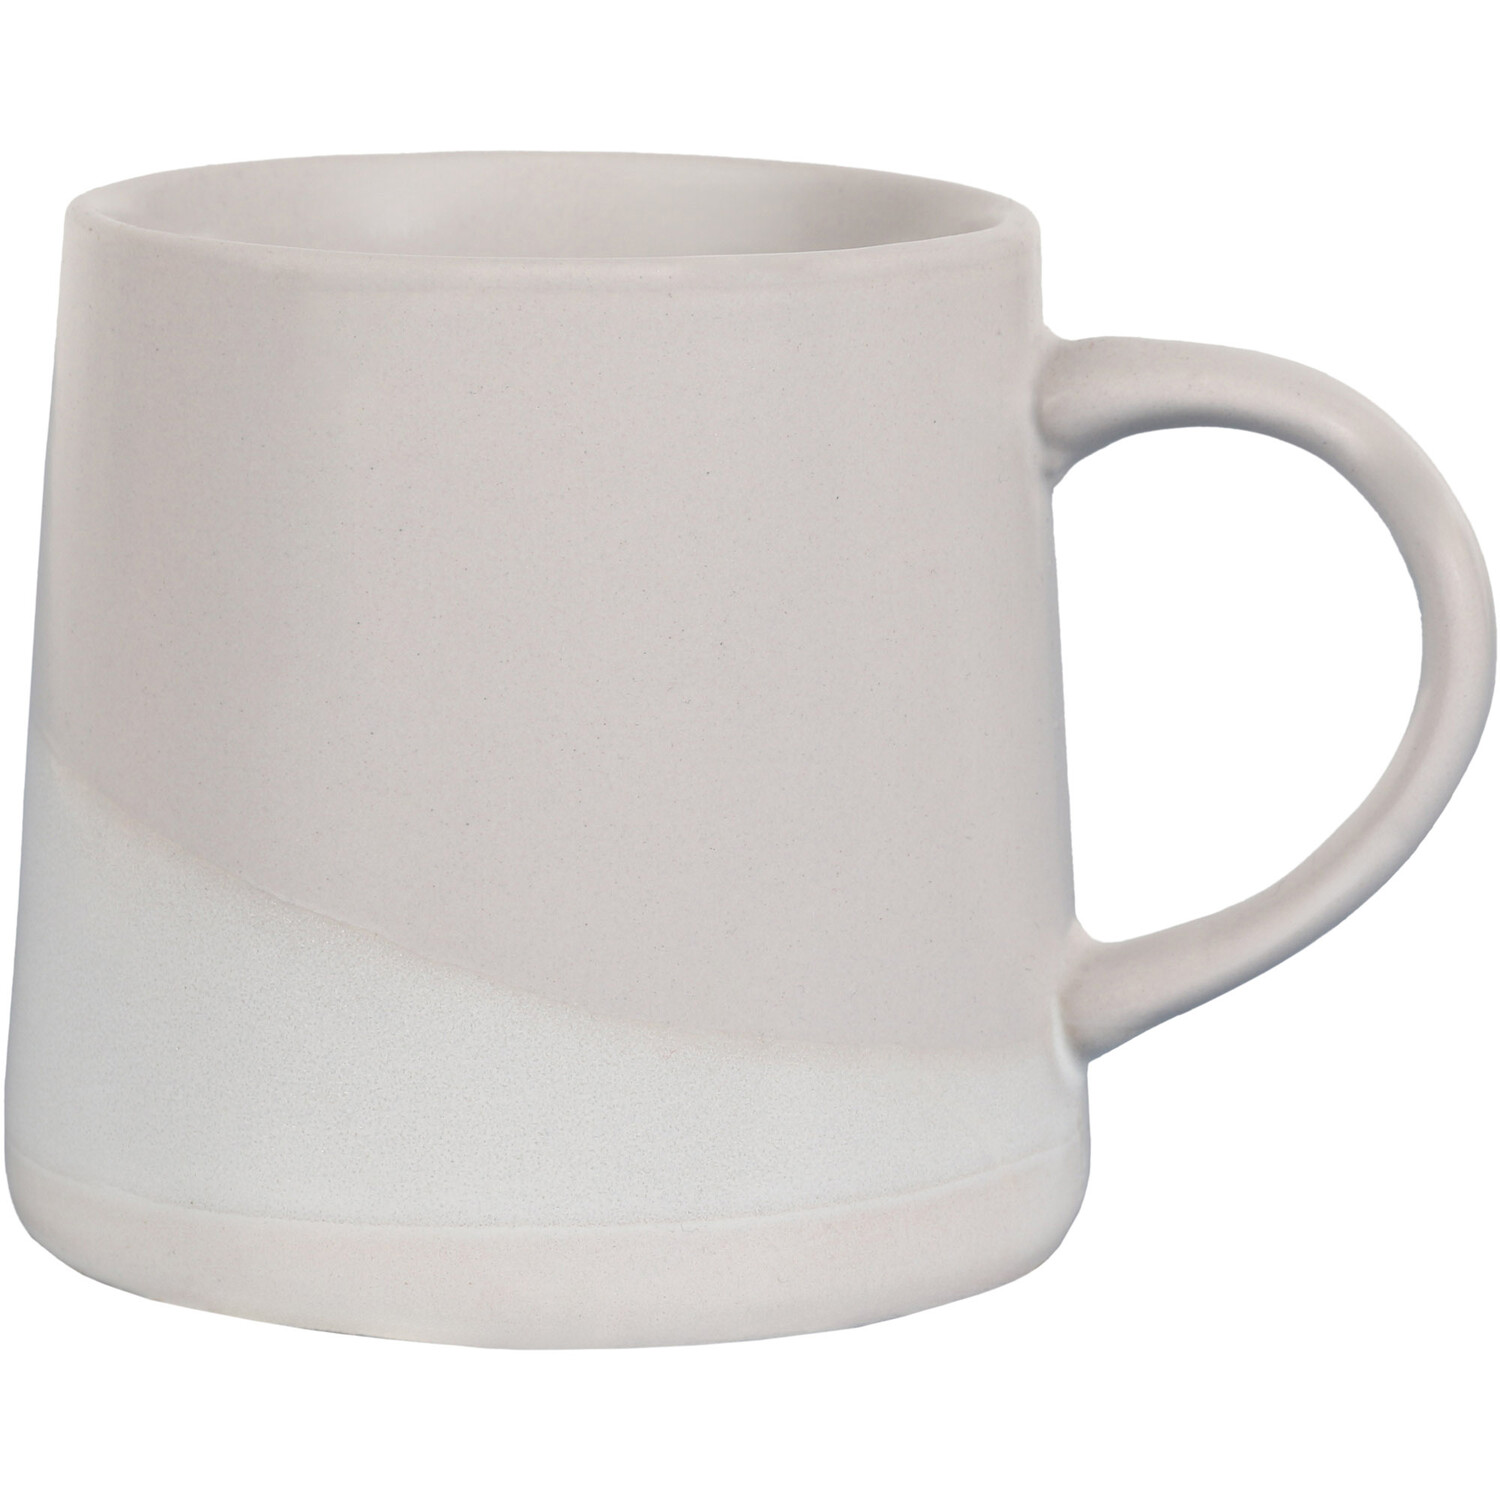 Two-Tone Stoneware Mug - Grey Image 1